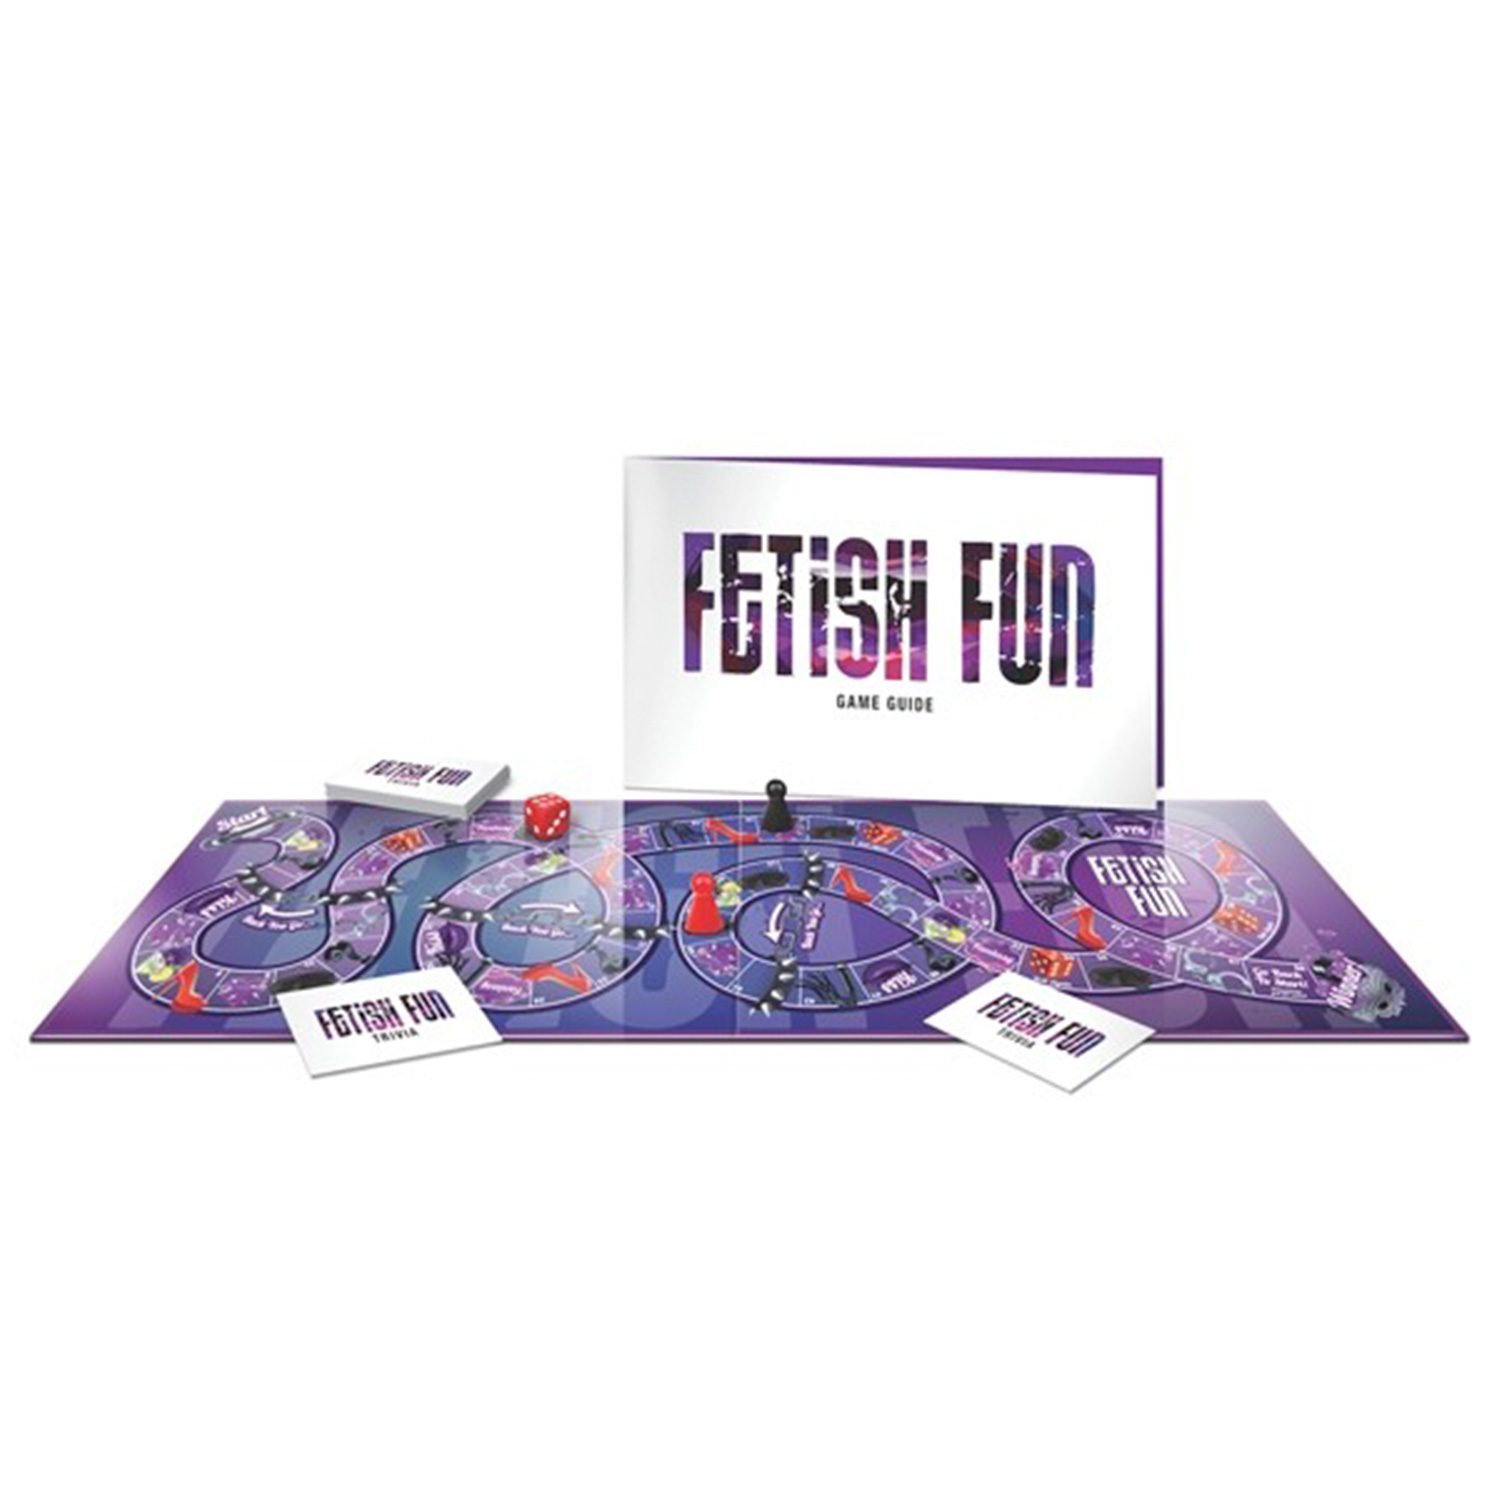 Fetish Fun Game Brætspil